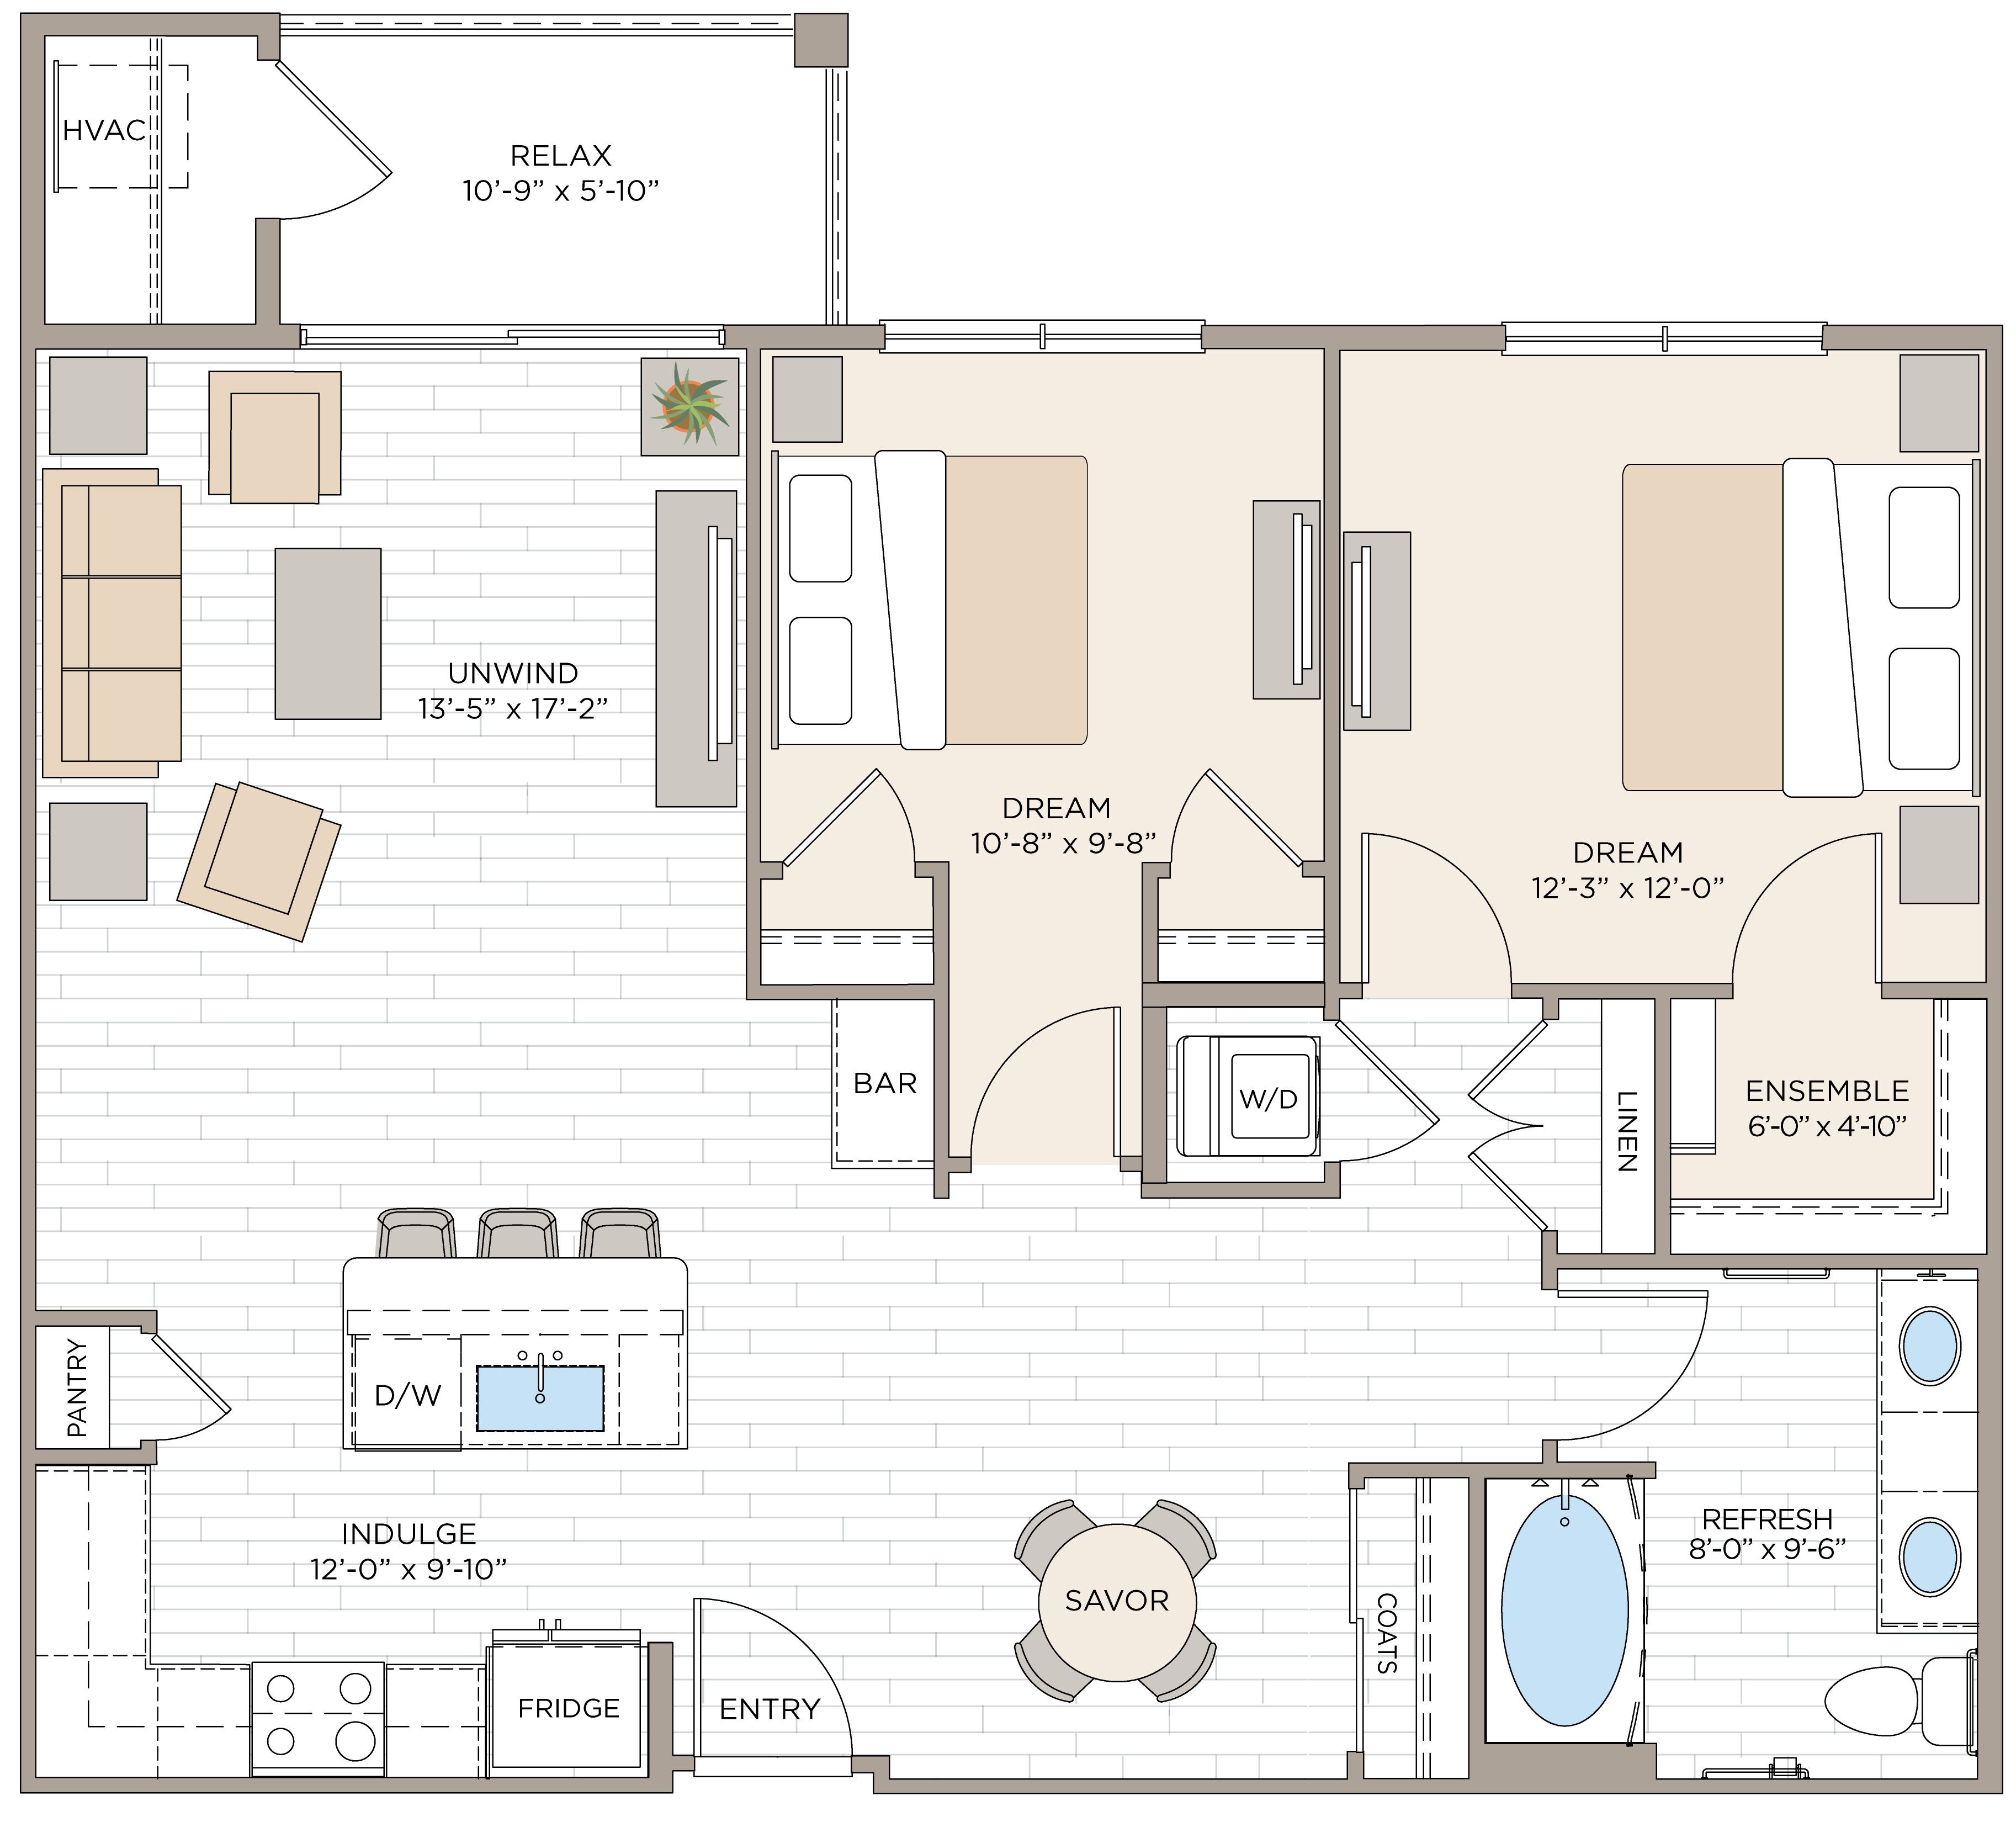 Floorplan for Apartment #14122, 2 bedroom unit at Halstead Maynard Crossing